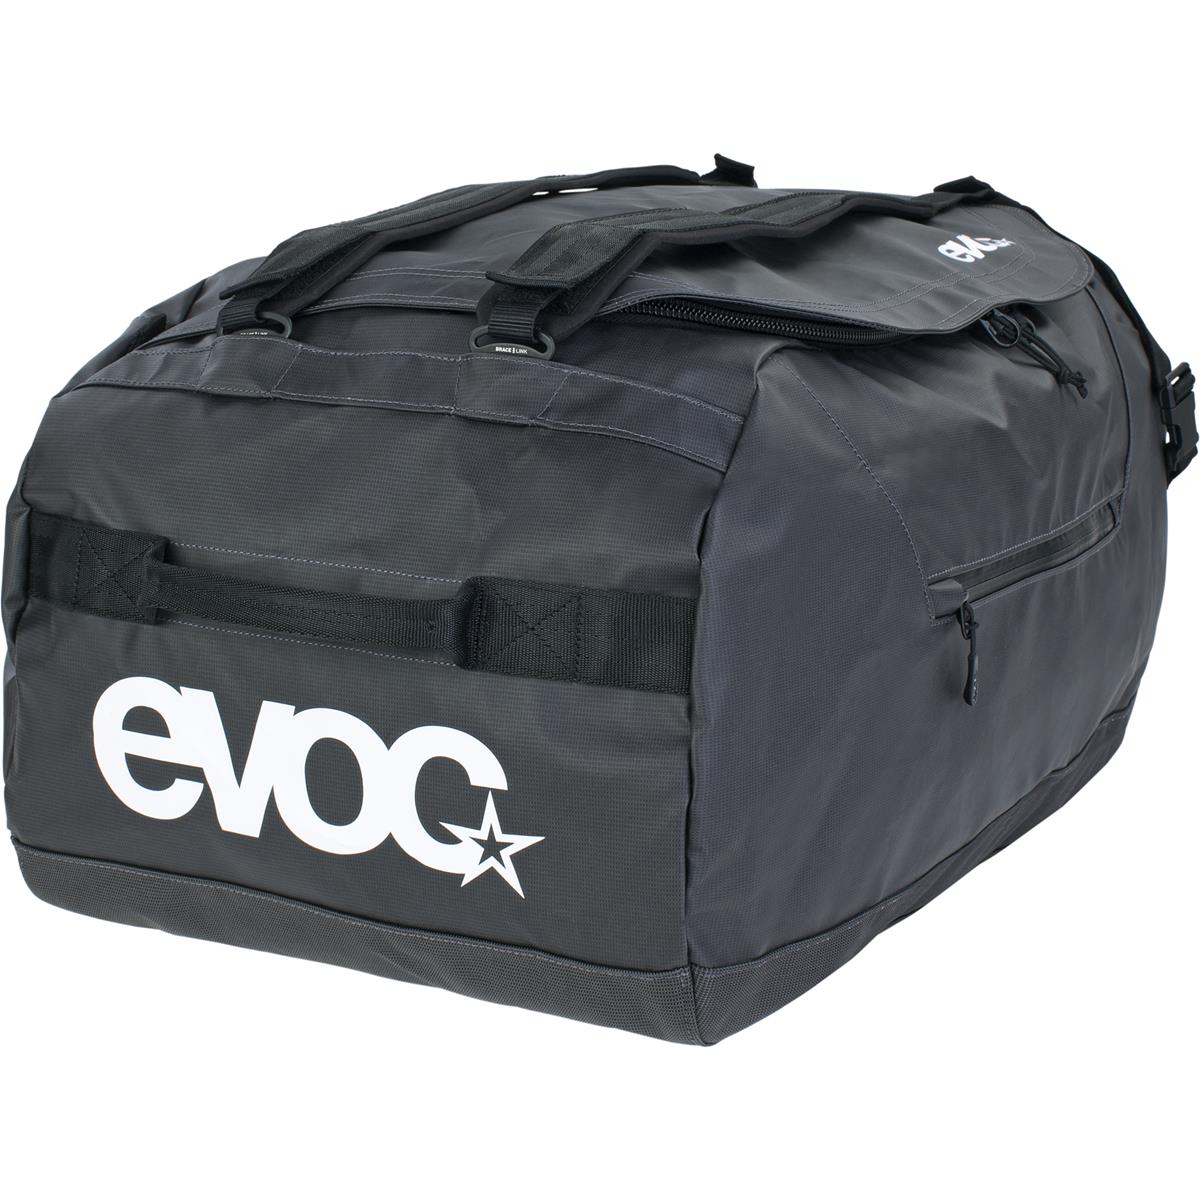 Evoc Borsone Duffle Bag 60 Carbon Grigio/Nero